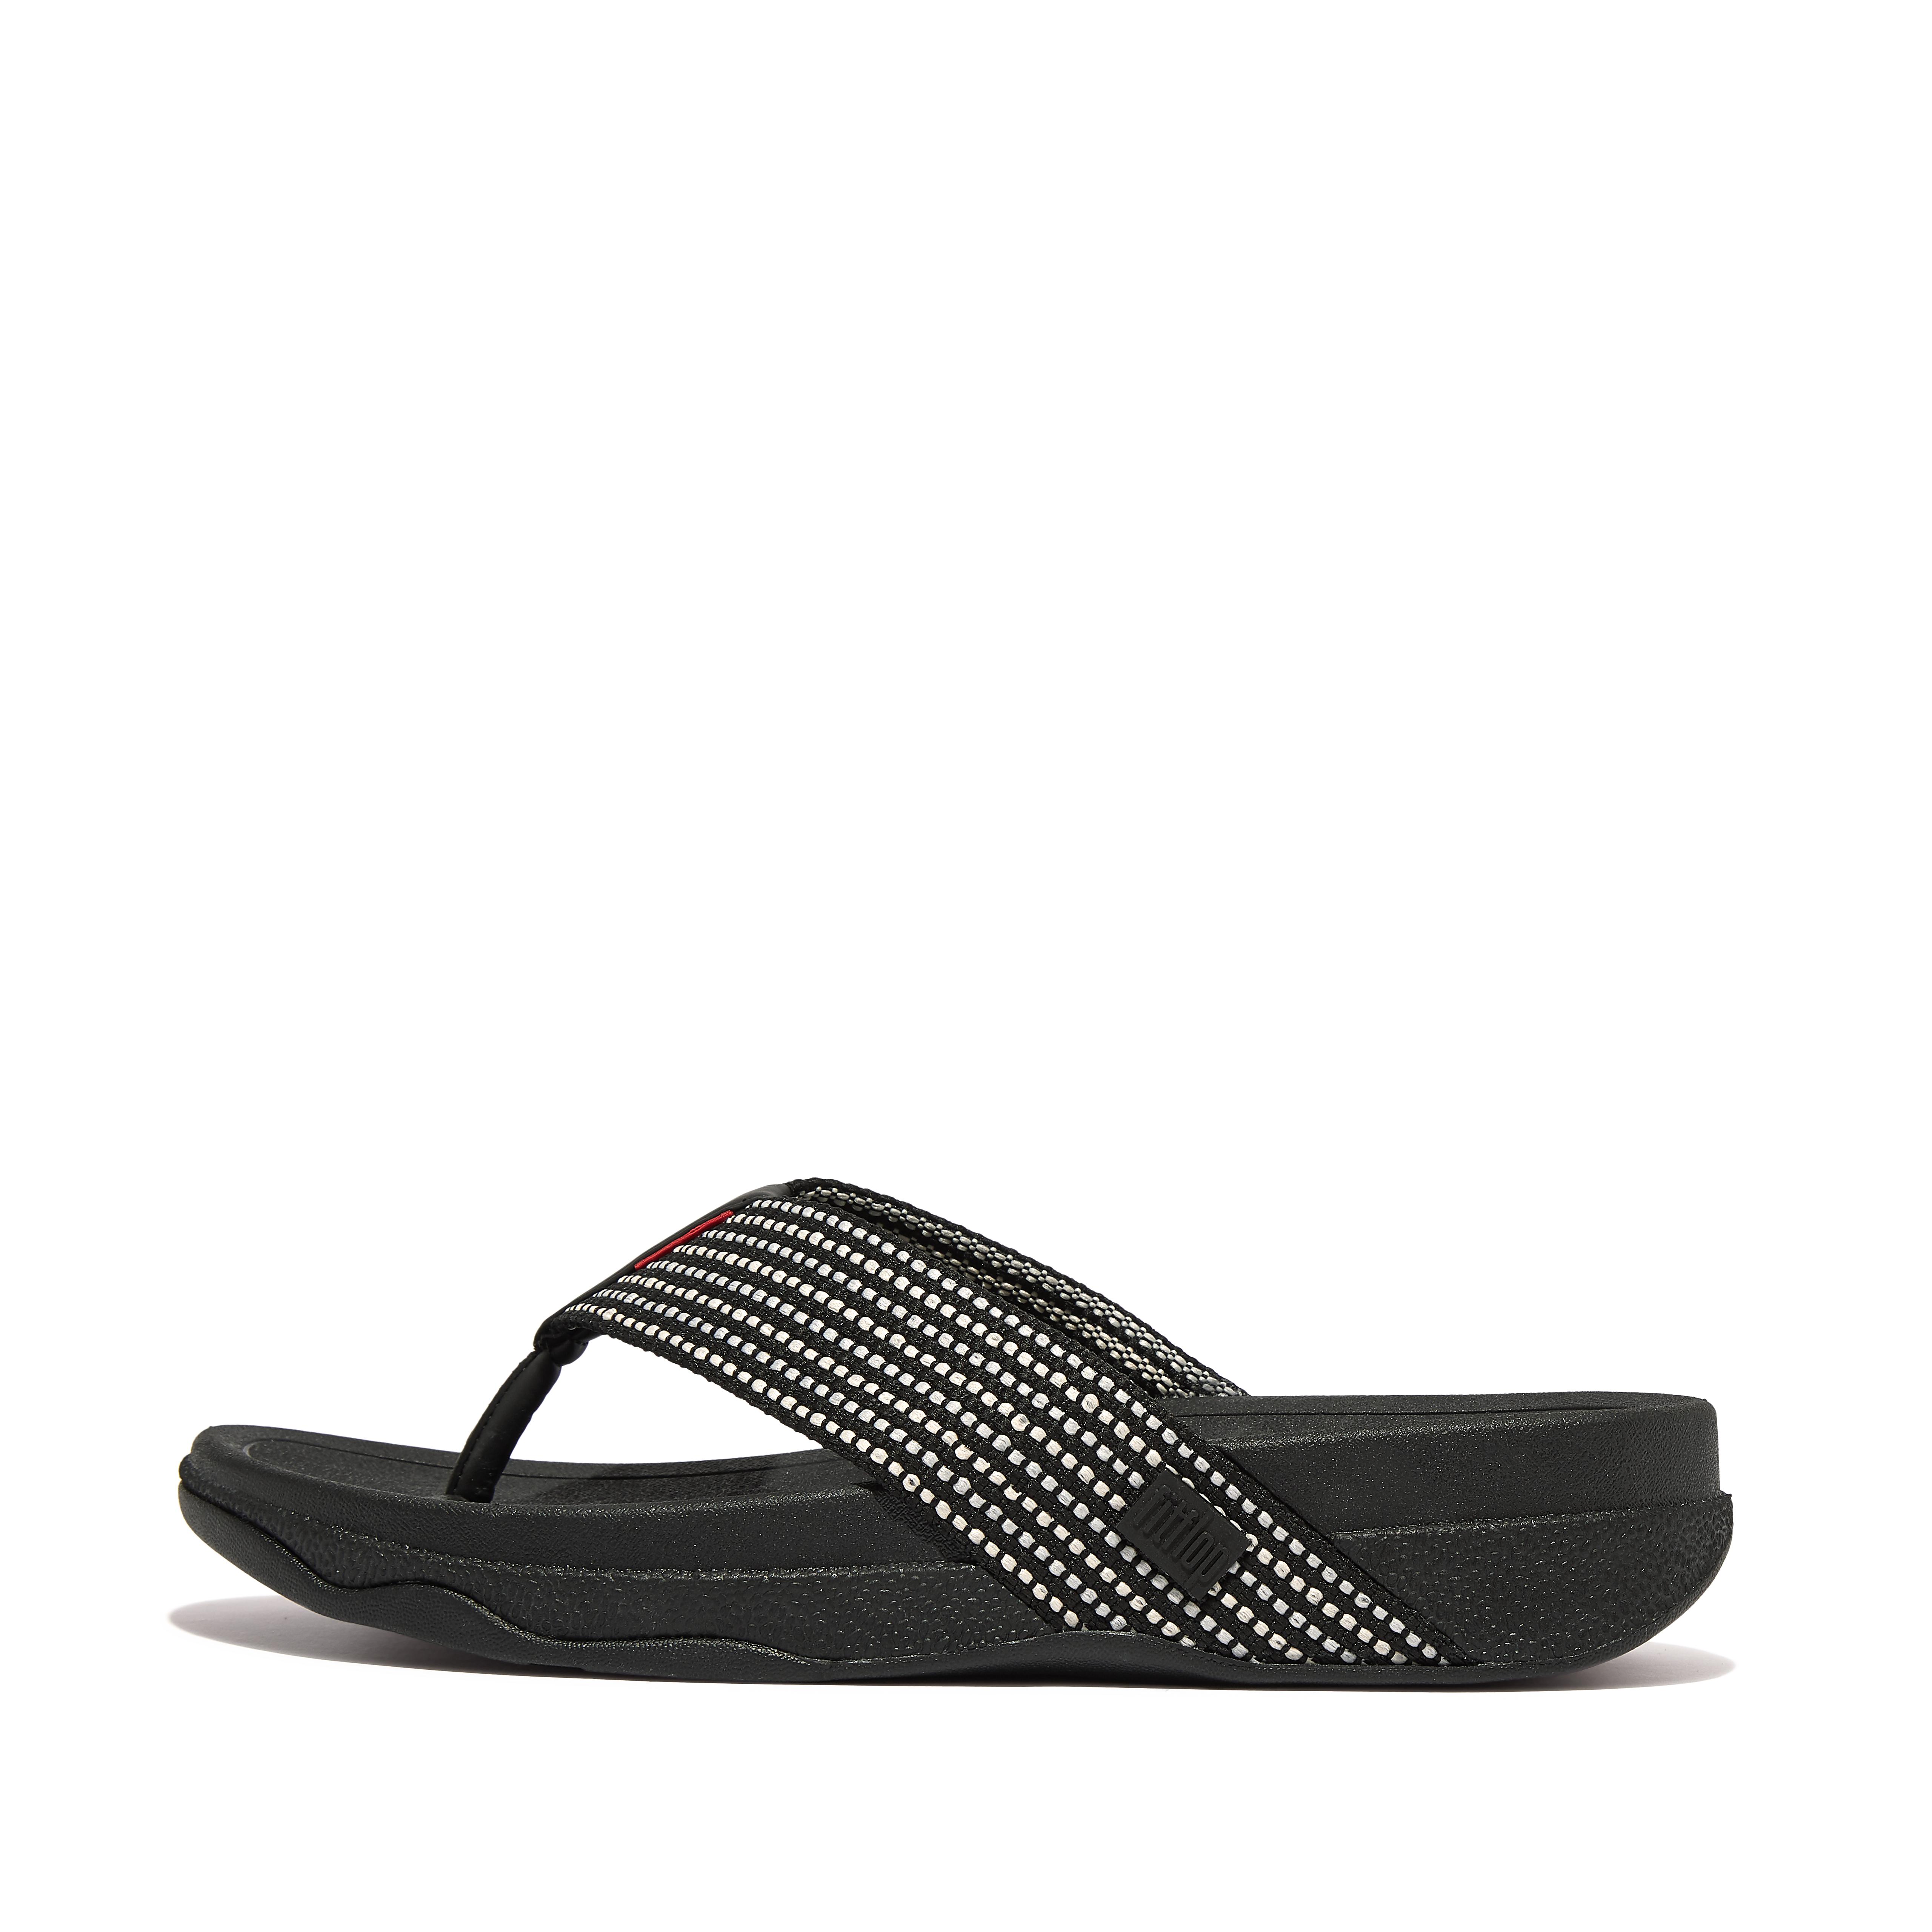 핏플랍 Fitflop Weave-Stripe Toe-Post Sandals,Black Mix